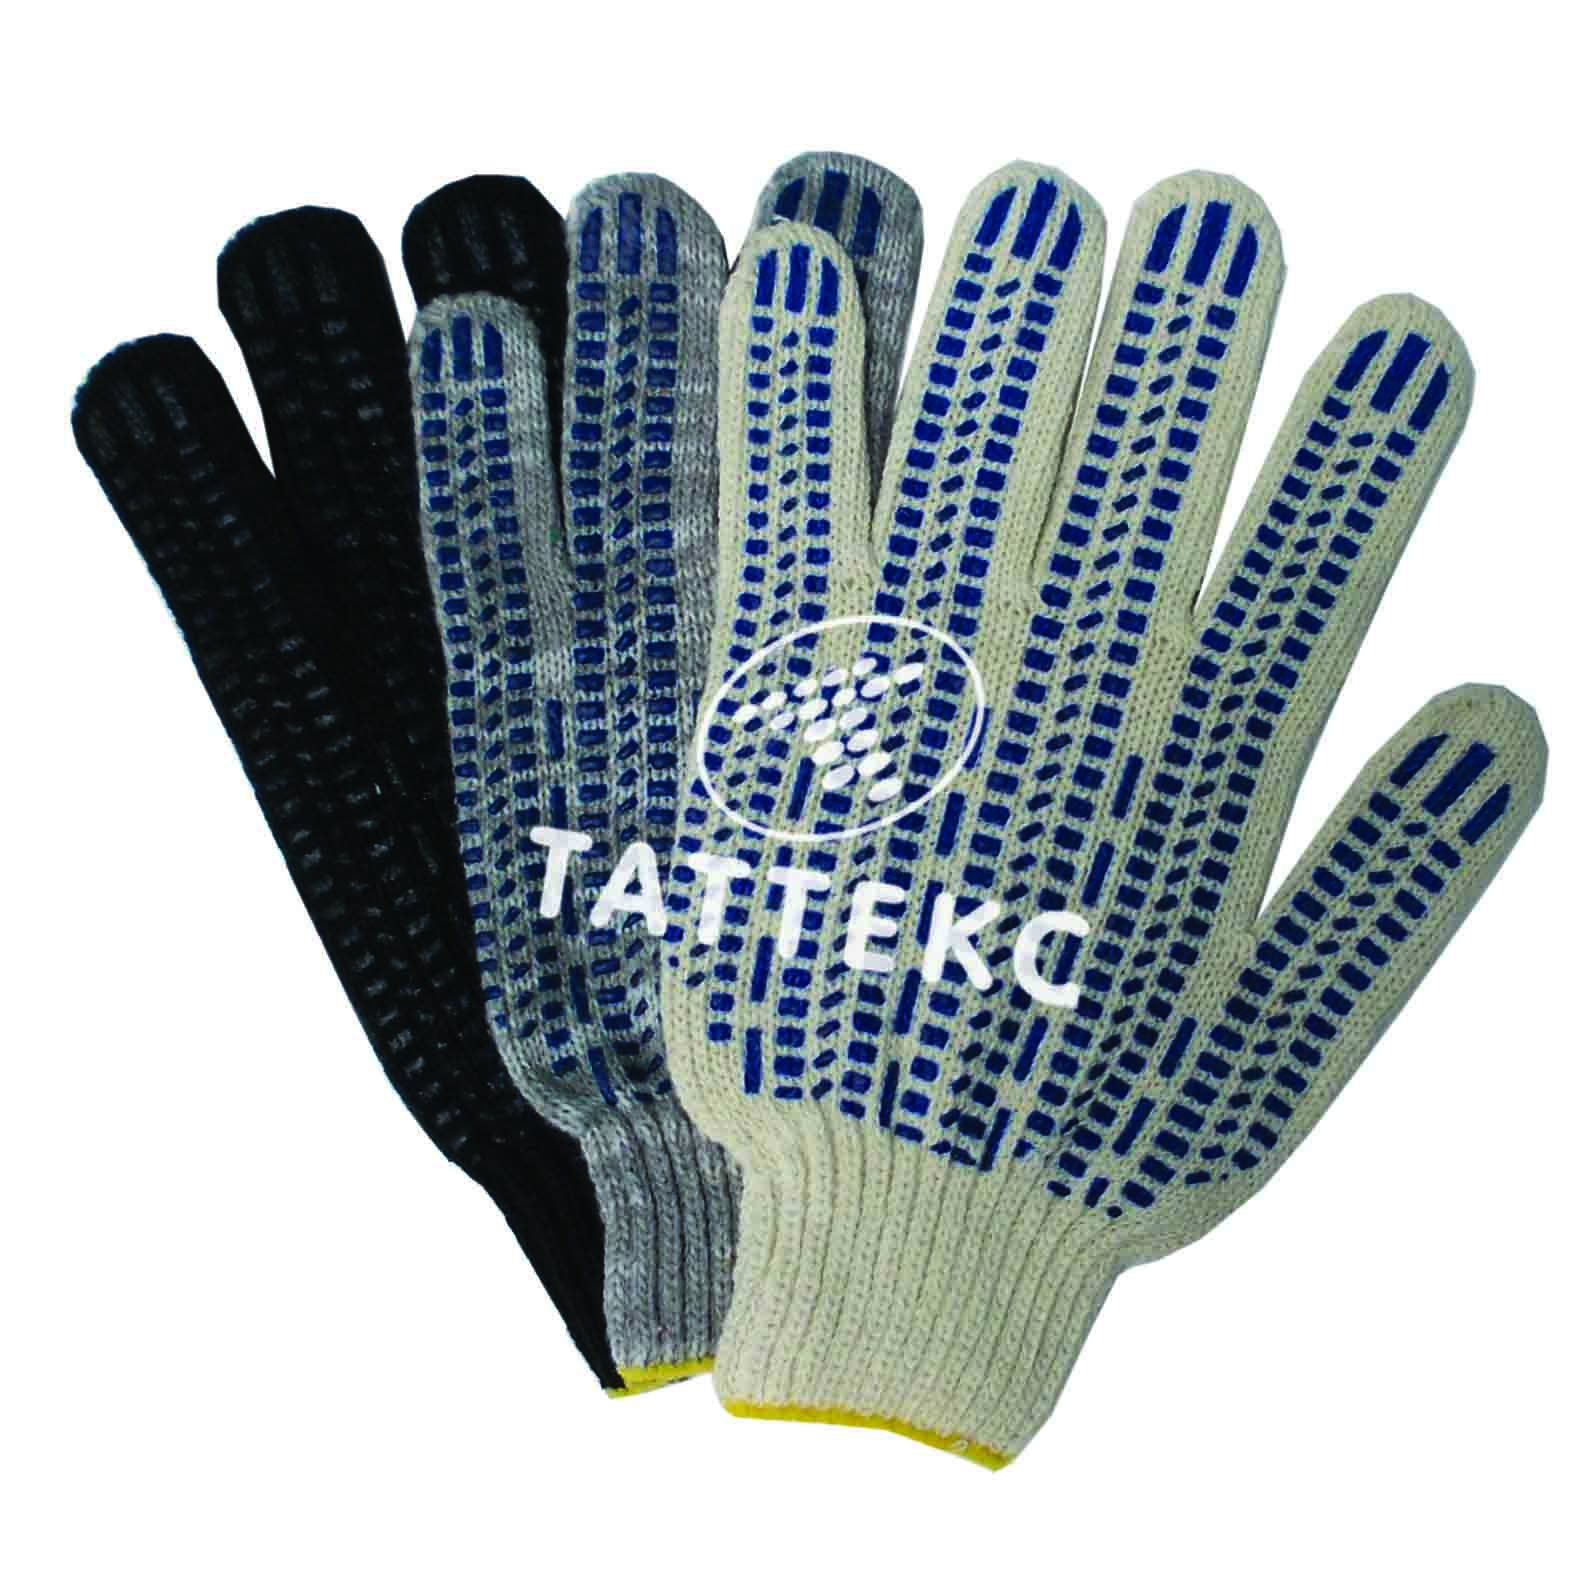 Купить производство перчаток. Перчатки ARMPROTECT 04 С точеч. ПВХ р10. Перчатки, трикотажные, с ПВХ, LCL-XT-glaves4. Перчатки 2hands 0112 eco1. #Перчатки 2hands Light Eco.